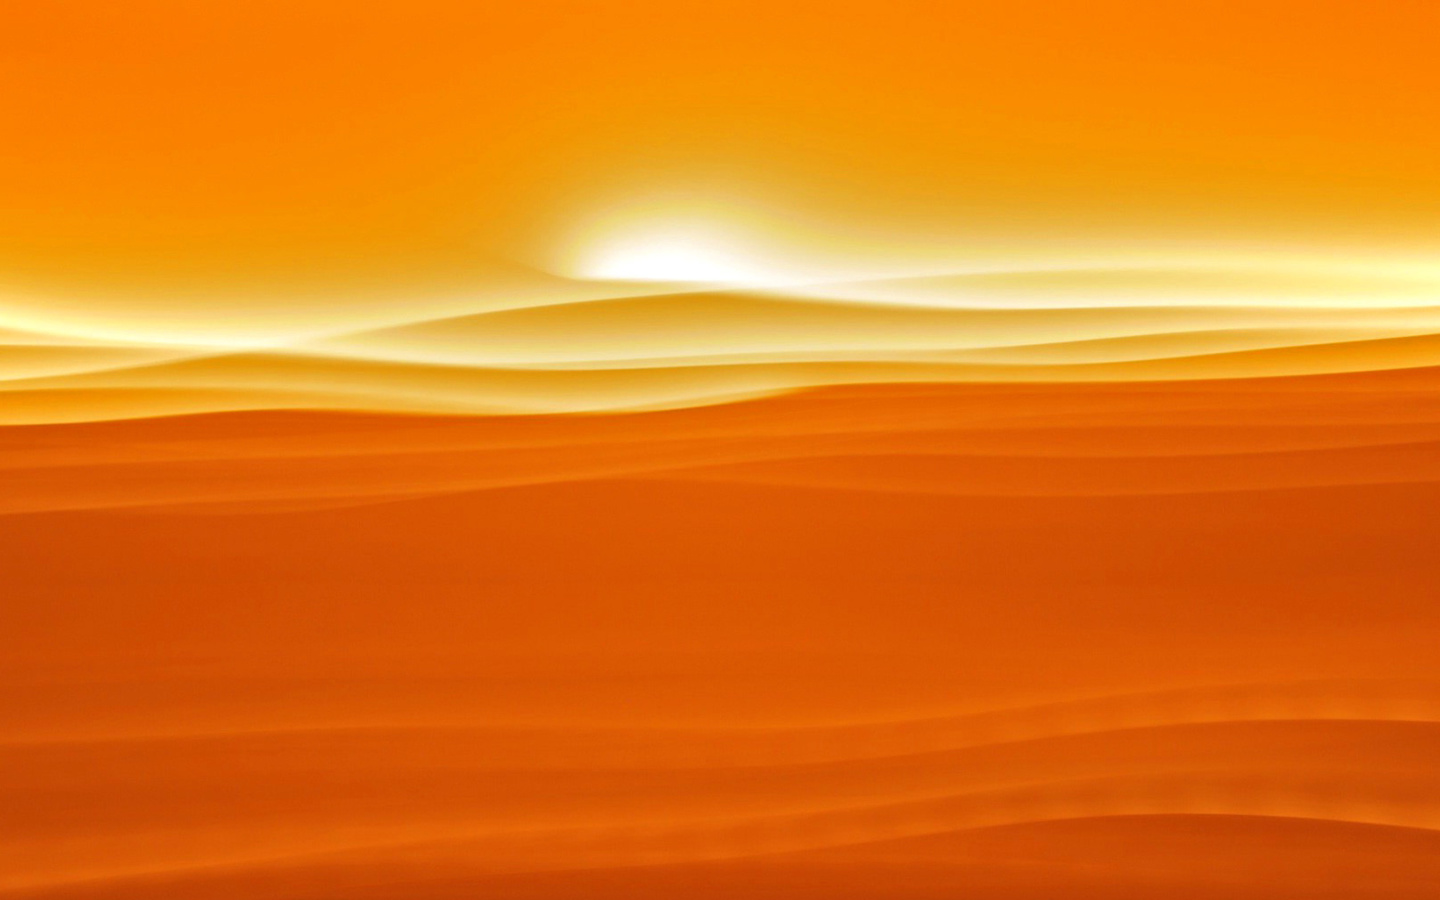 Orange Sky and Desert wallpaper 1440x900